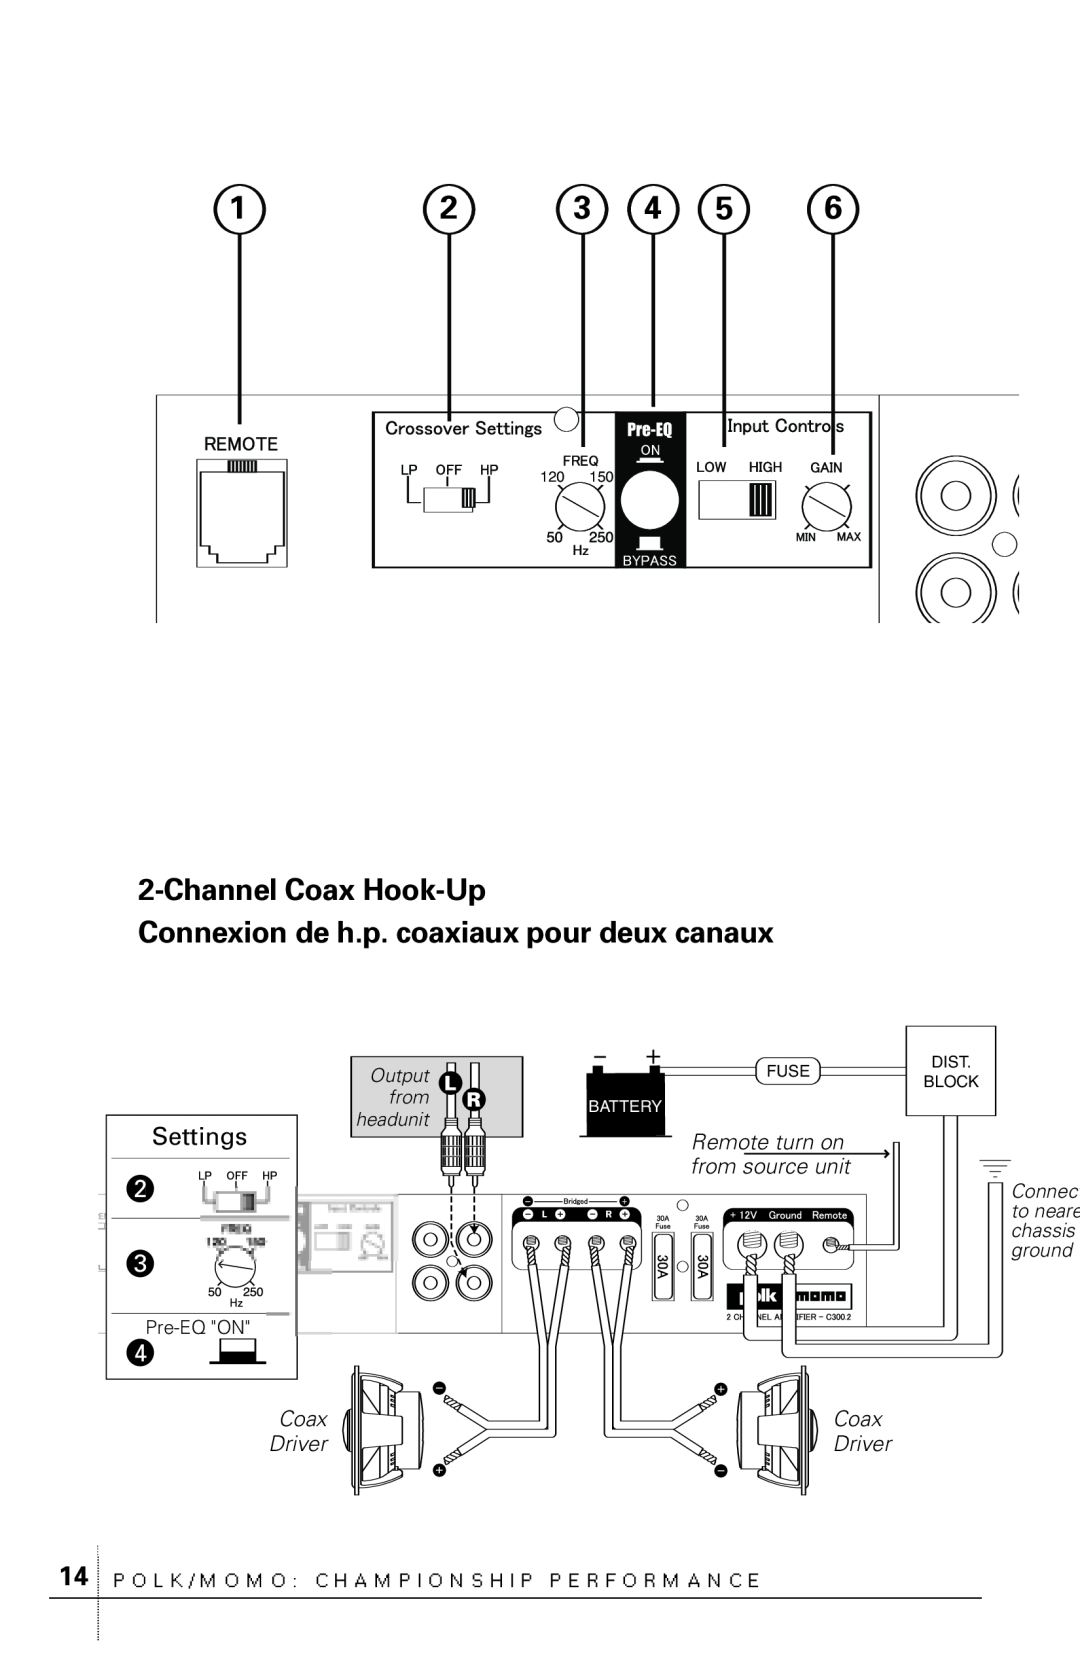 Polk Audio C300.2 ChannelCoax Hook-Up, Connexion de h.p. coaxiaux pour deux canaux, Settings, Coax Driver, Pre-EQON, Fuse 